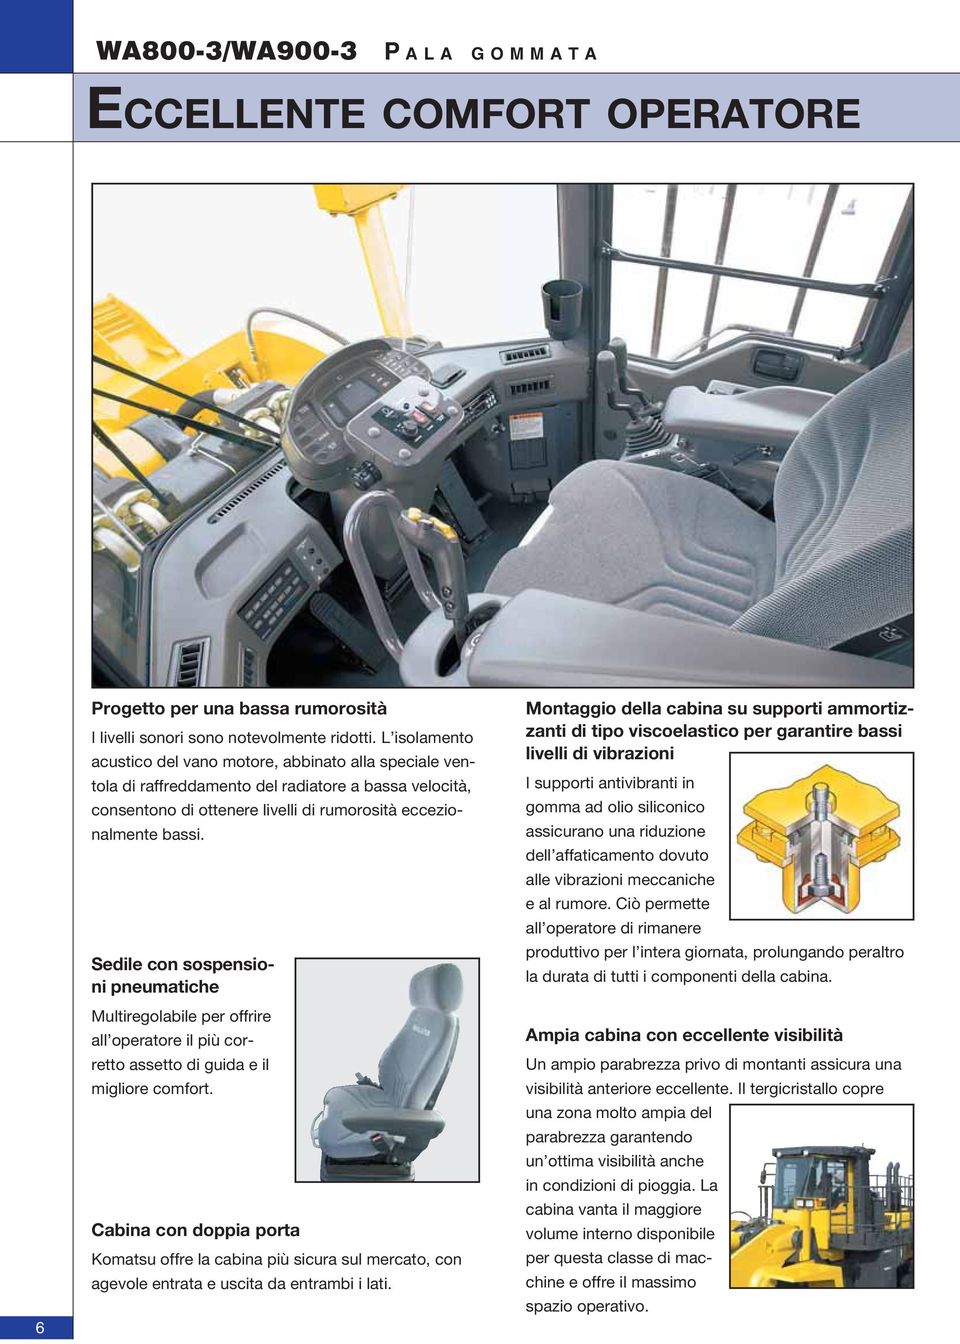 Sedile con sospensioni pneumatiche Multiregolabile per offrire all operatore il più corretto assetto di guida e il migliore comfort.